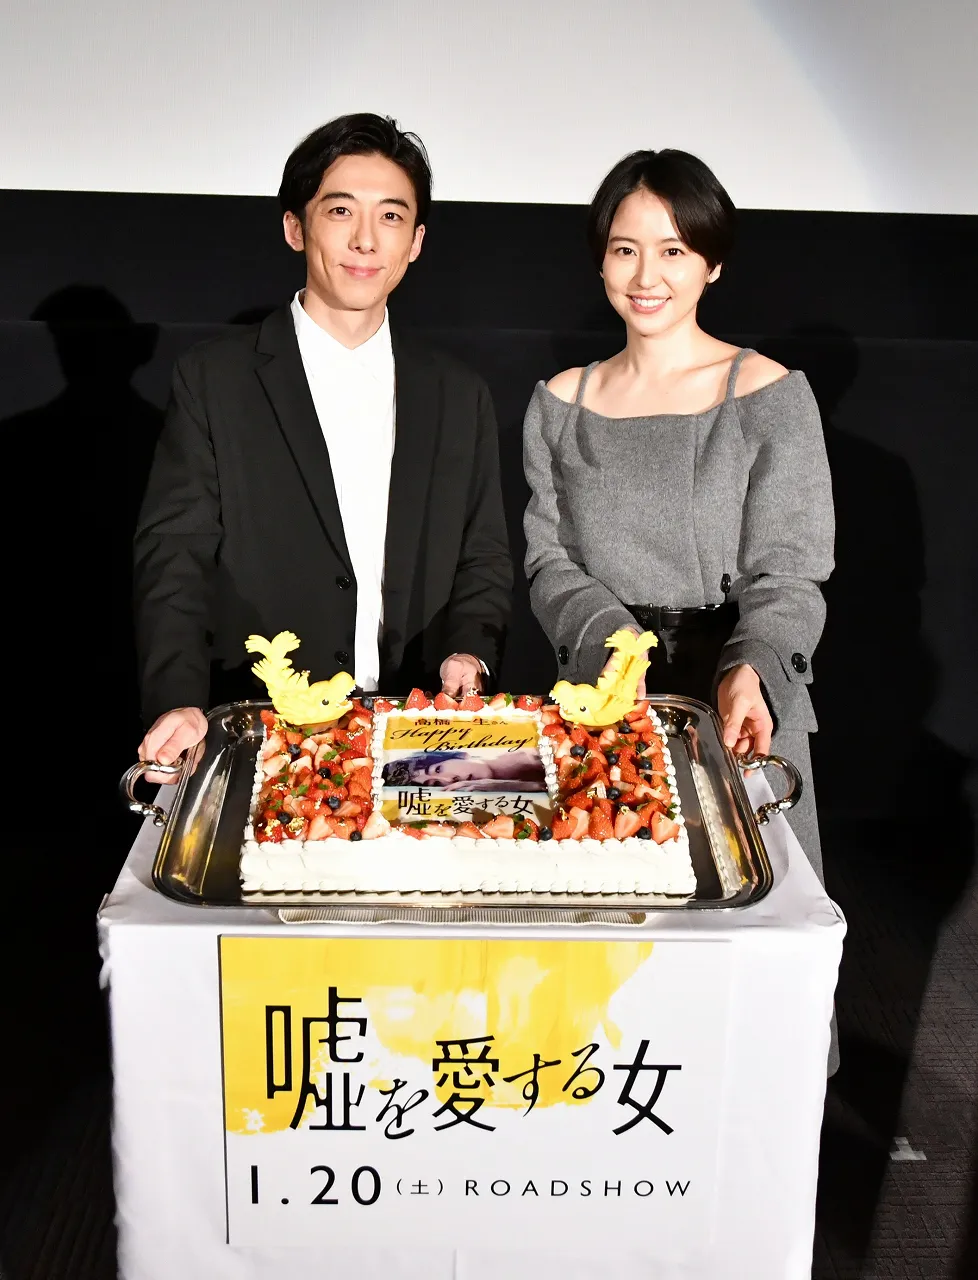 長澤まさみ、高橋一生共演の映画「嘘を愛する女」は2018年1月20日(土)に全国ロードショー